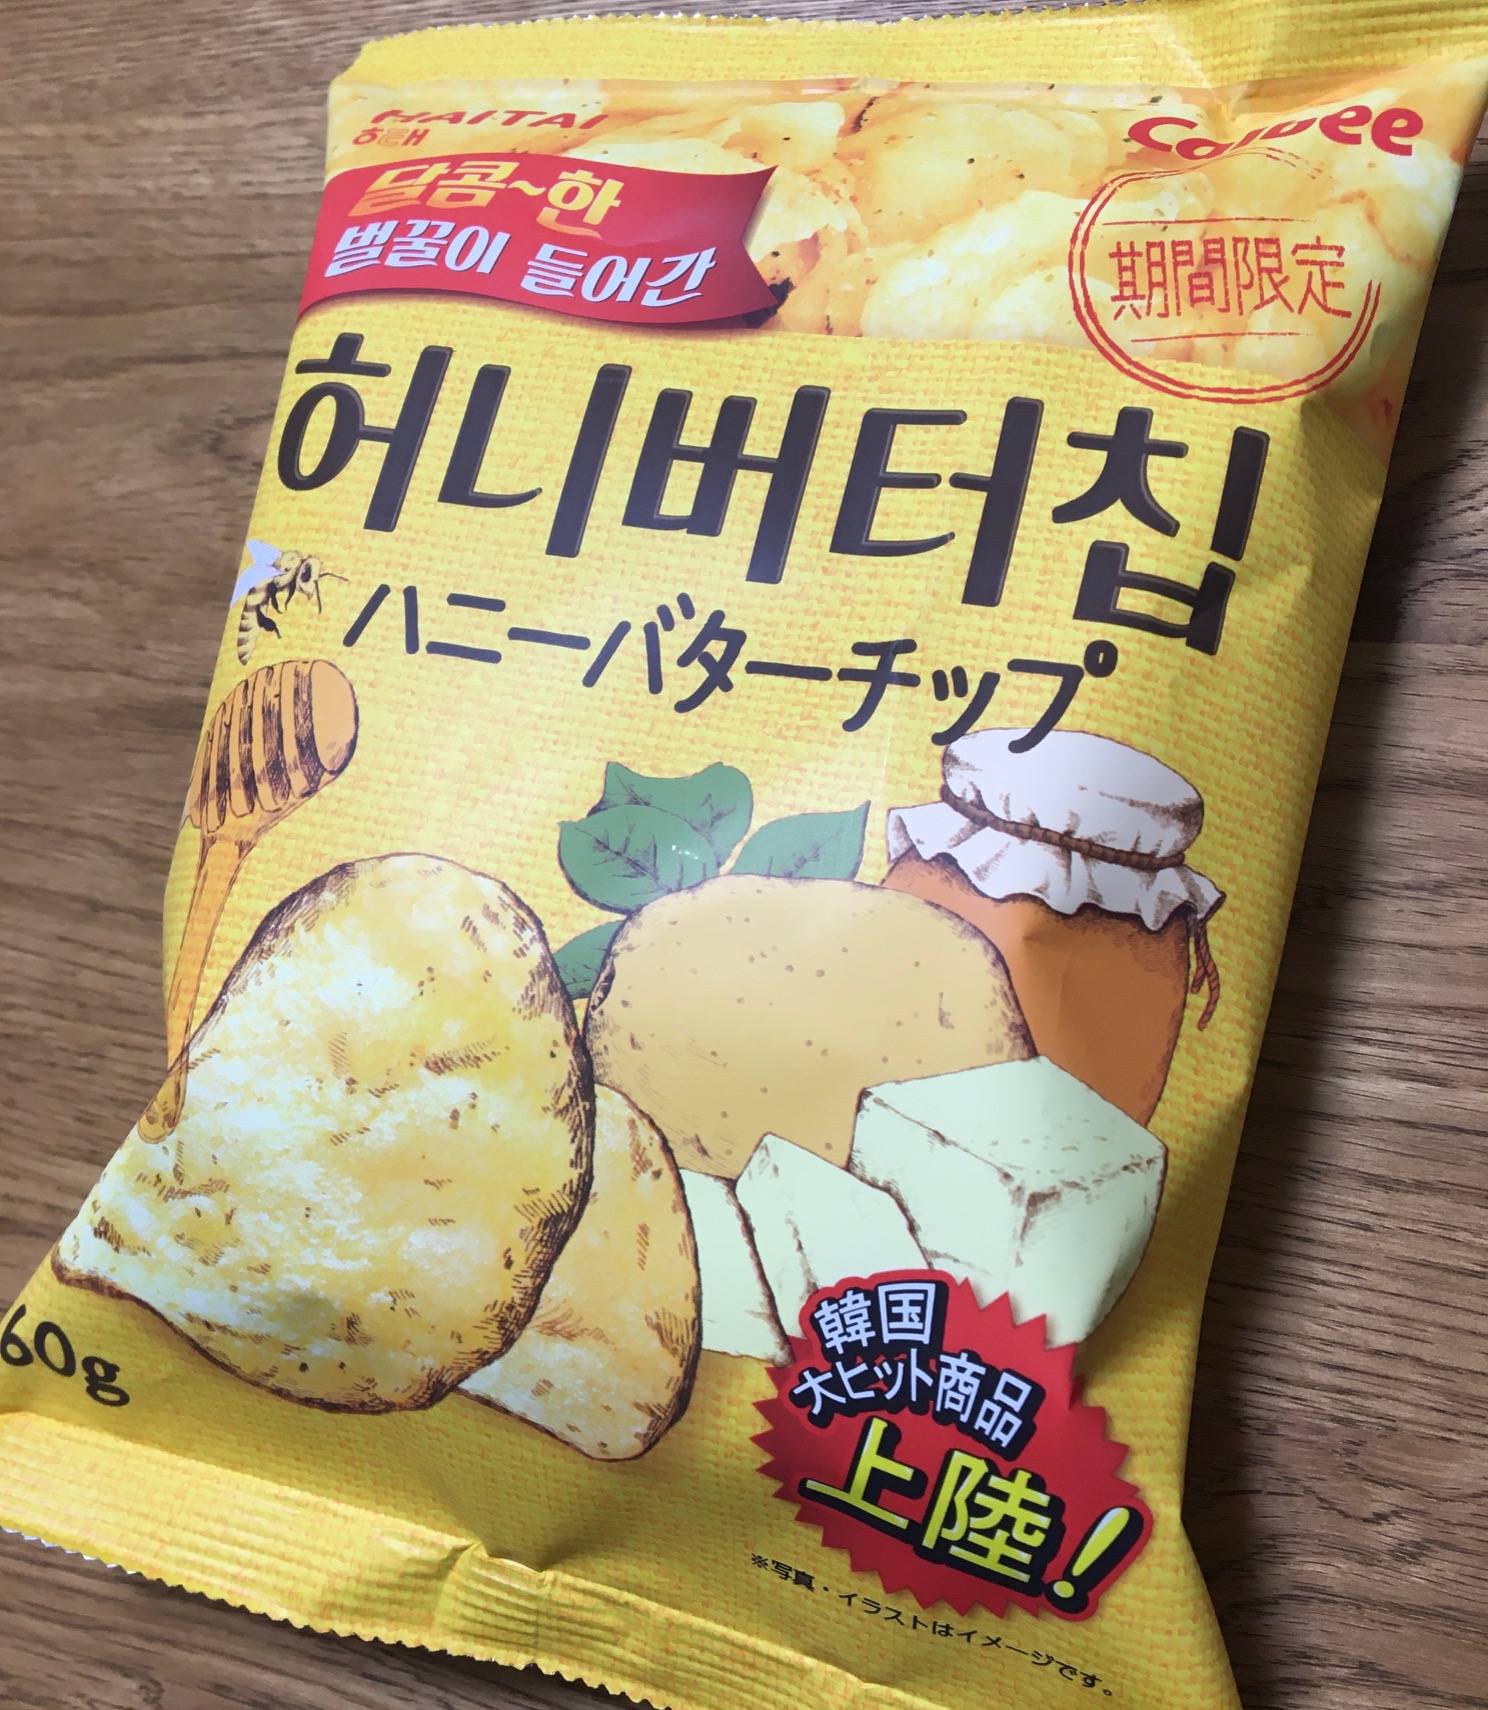 韓国の人気お菓子 幸せの甘い しょっぱい組み合わせ Haitai ヘテ のハニーバターチップがスーパーで買えた しばのこ美味いものブログ